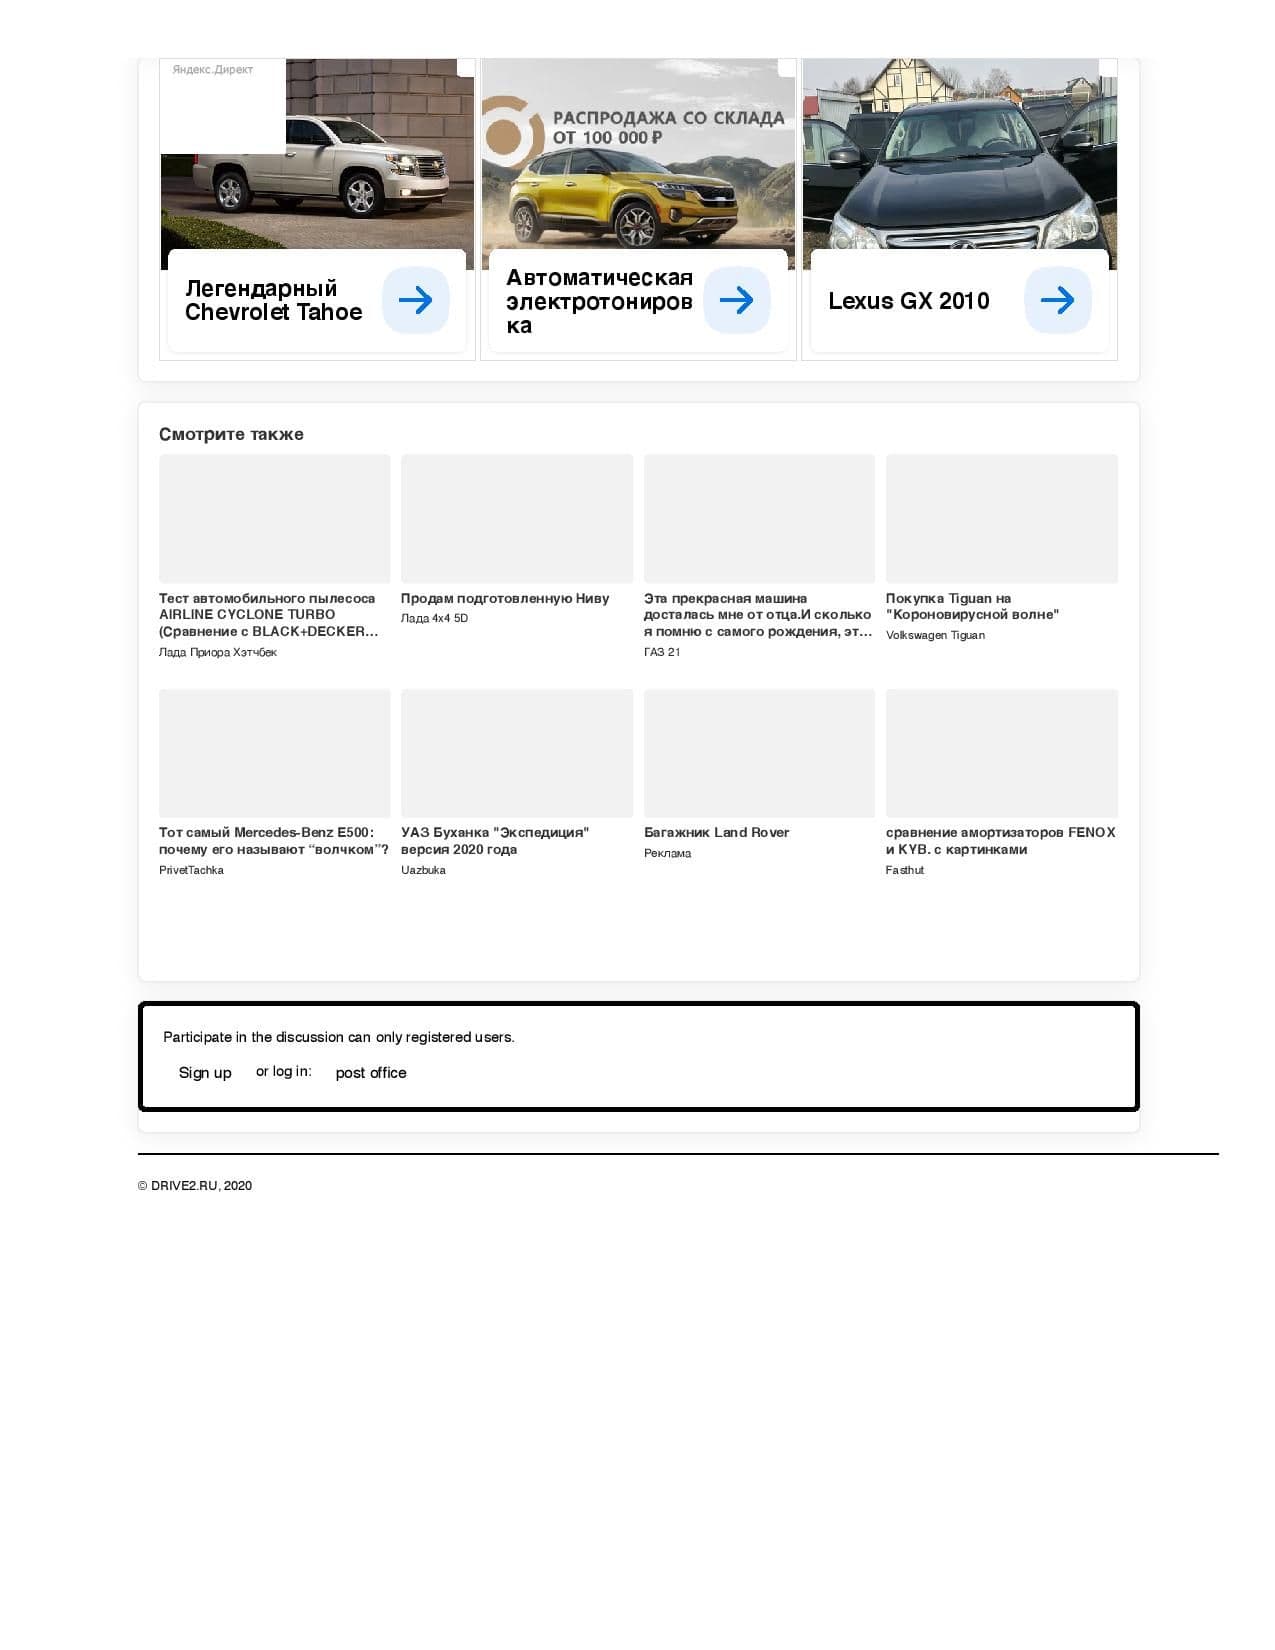 GX460 Reviews - Page 6 - ClubLexus - Lexus Forum Discussion